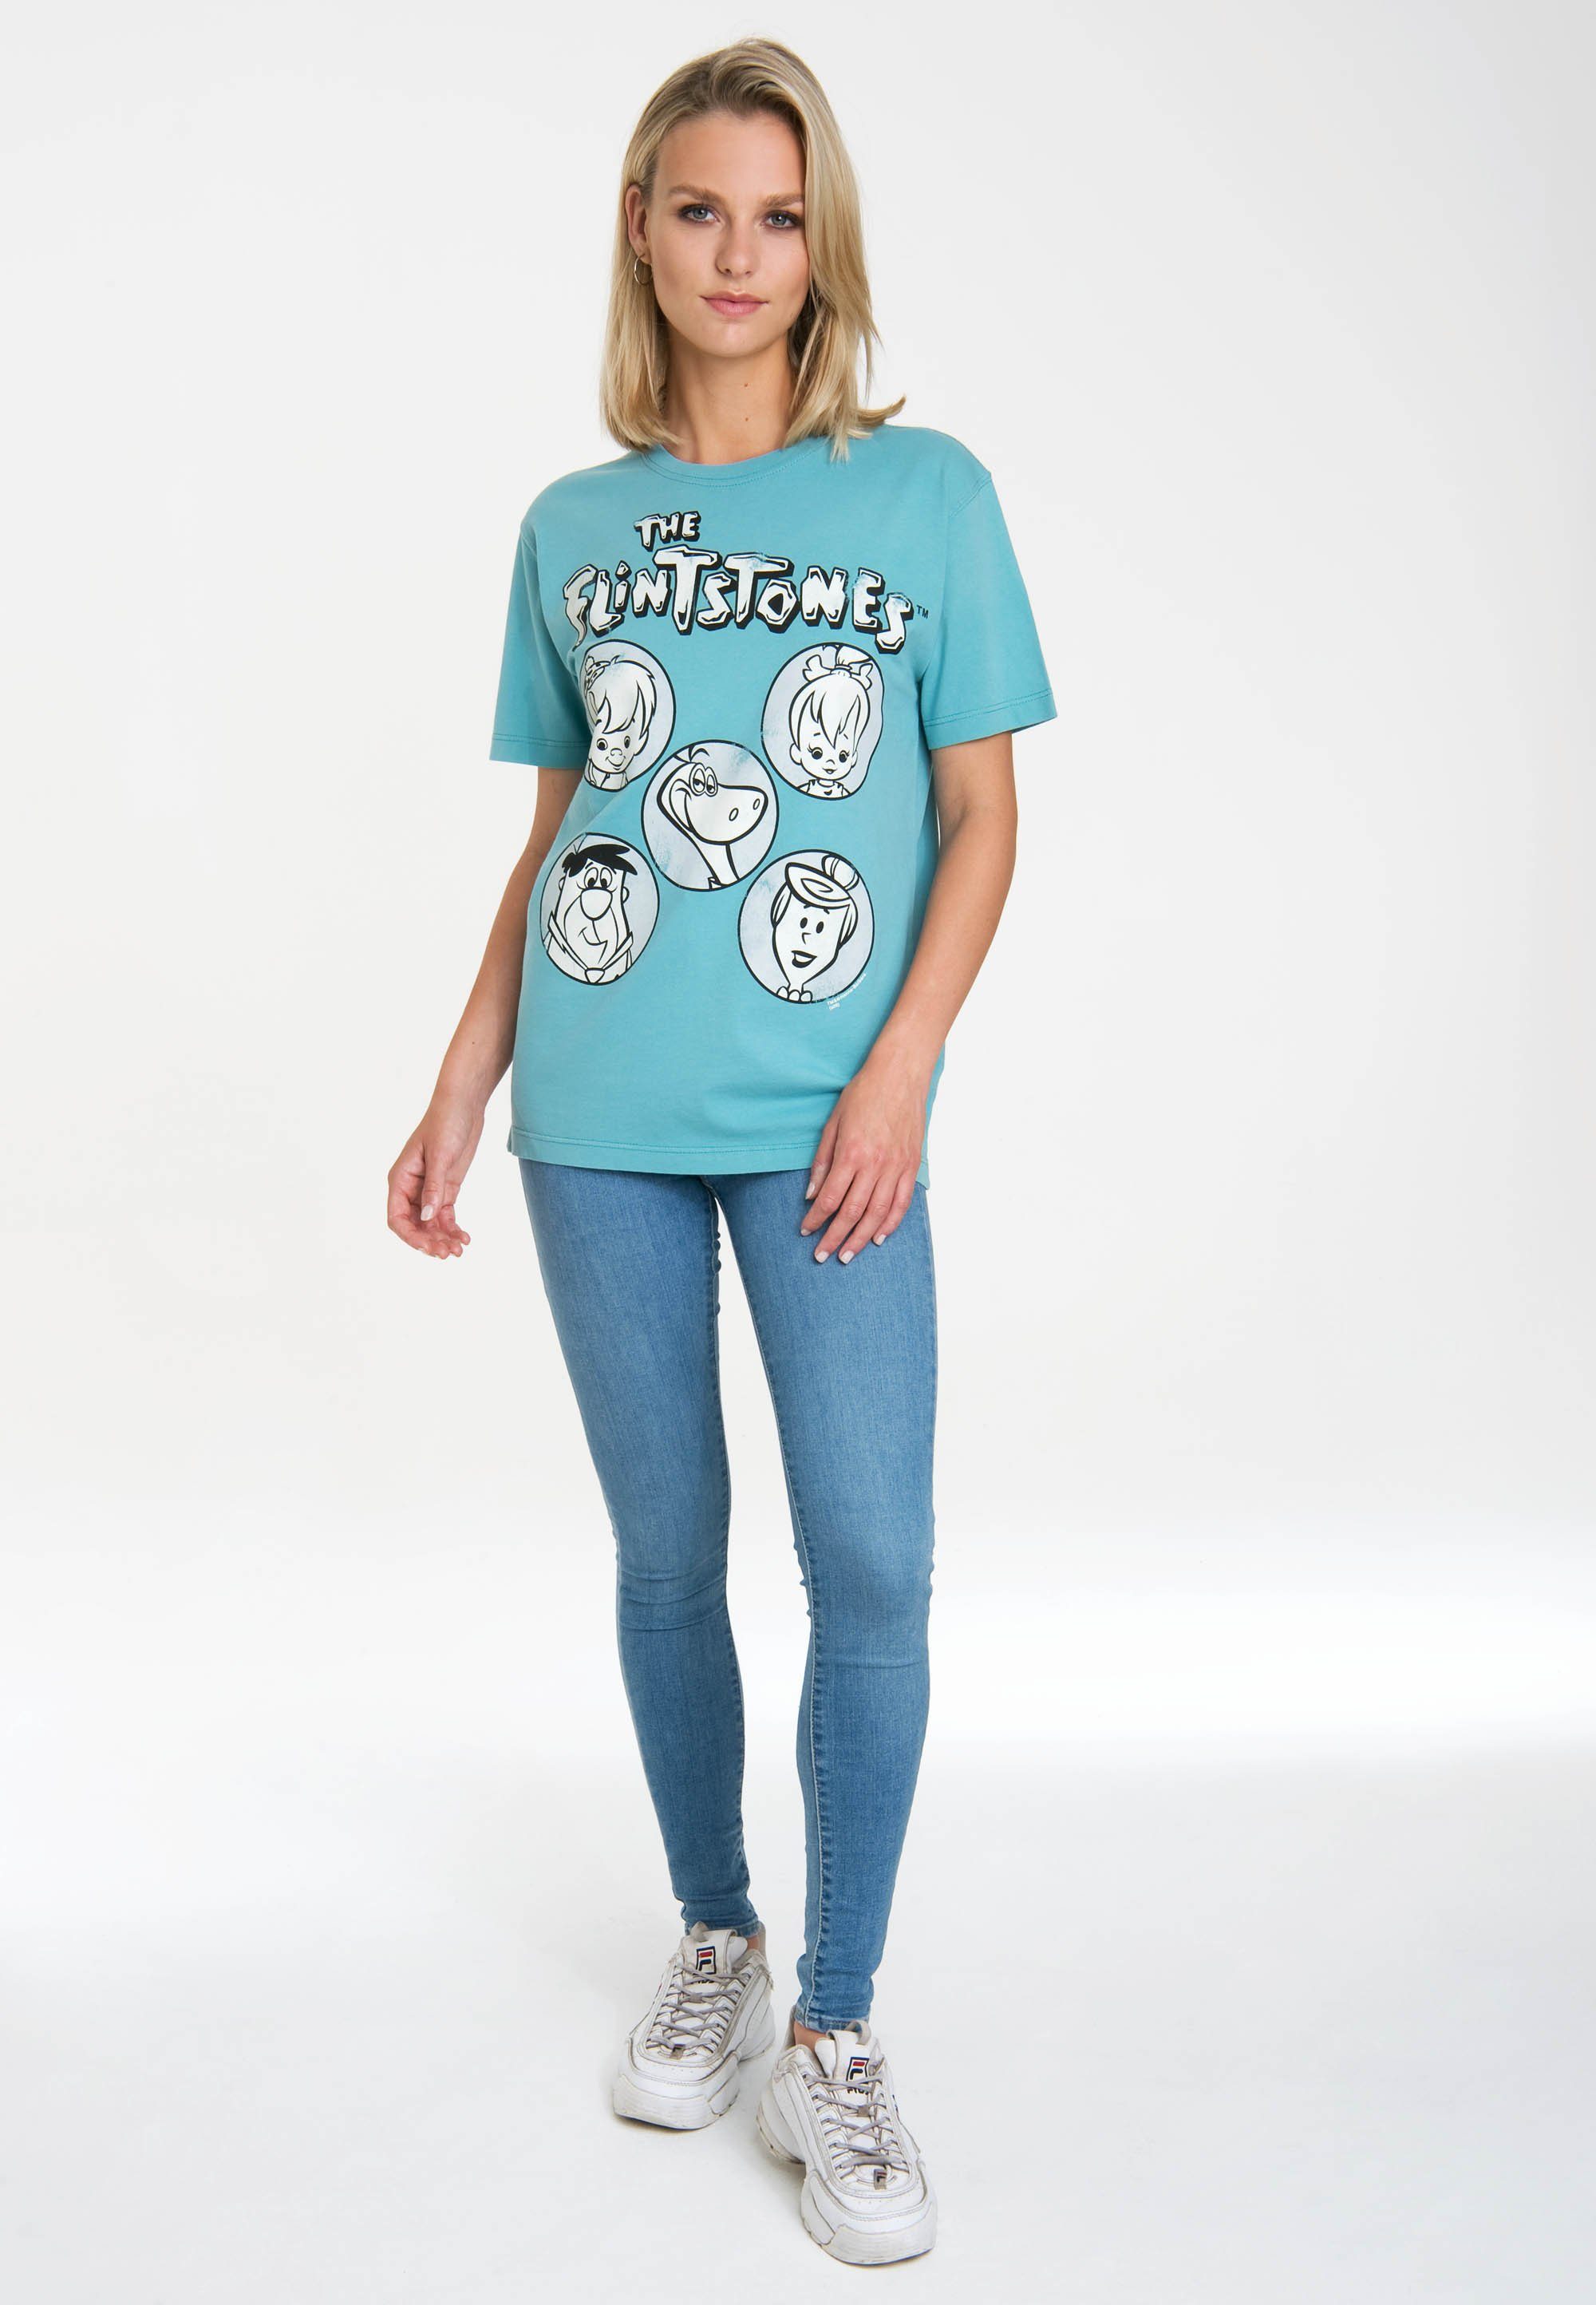 LOGOSHIRT T-Shirt The Flintstones mit lizenziertem Originaldesign | T-Shirts